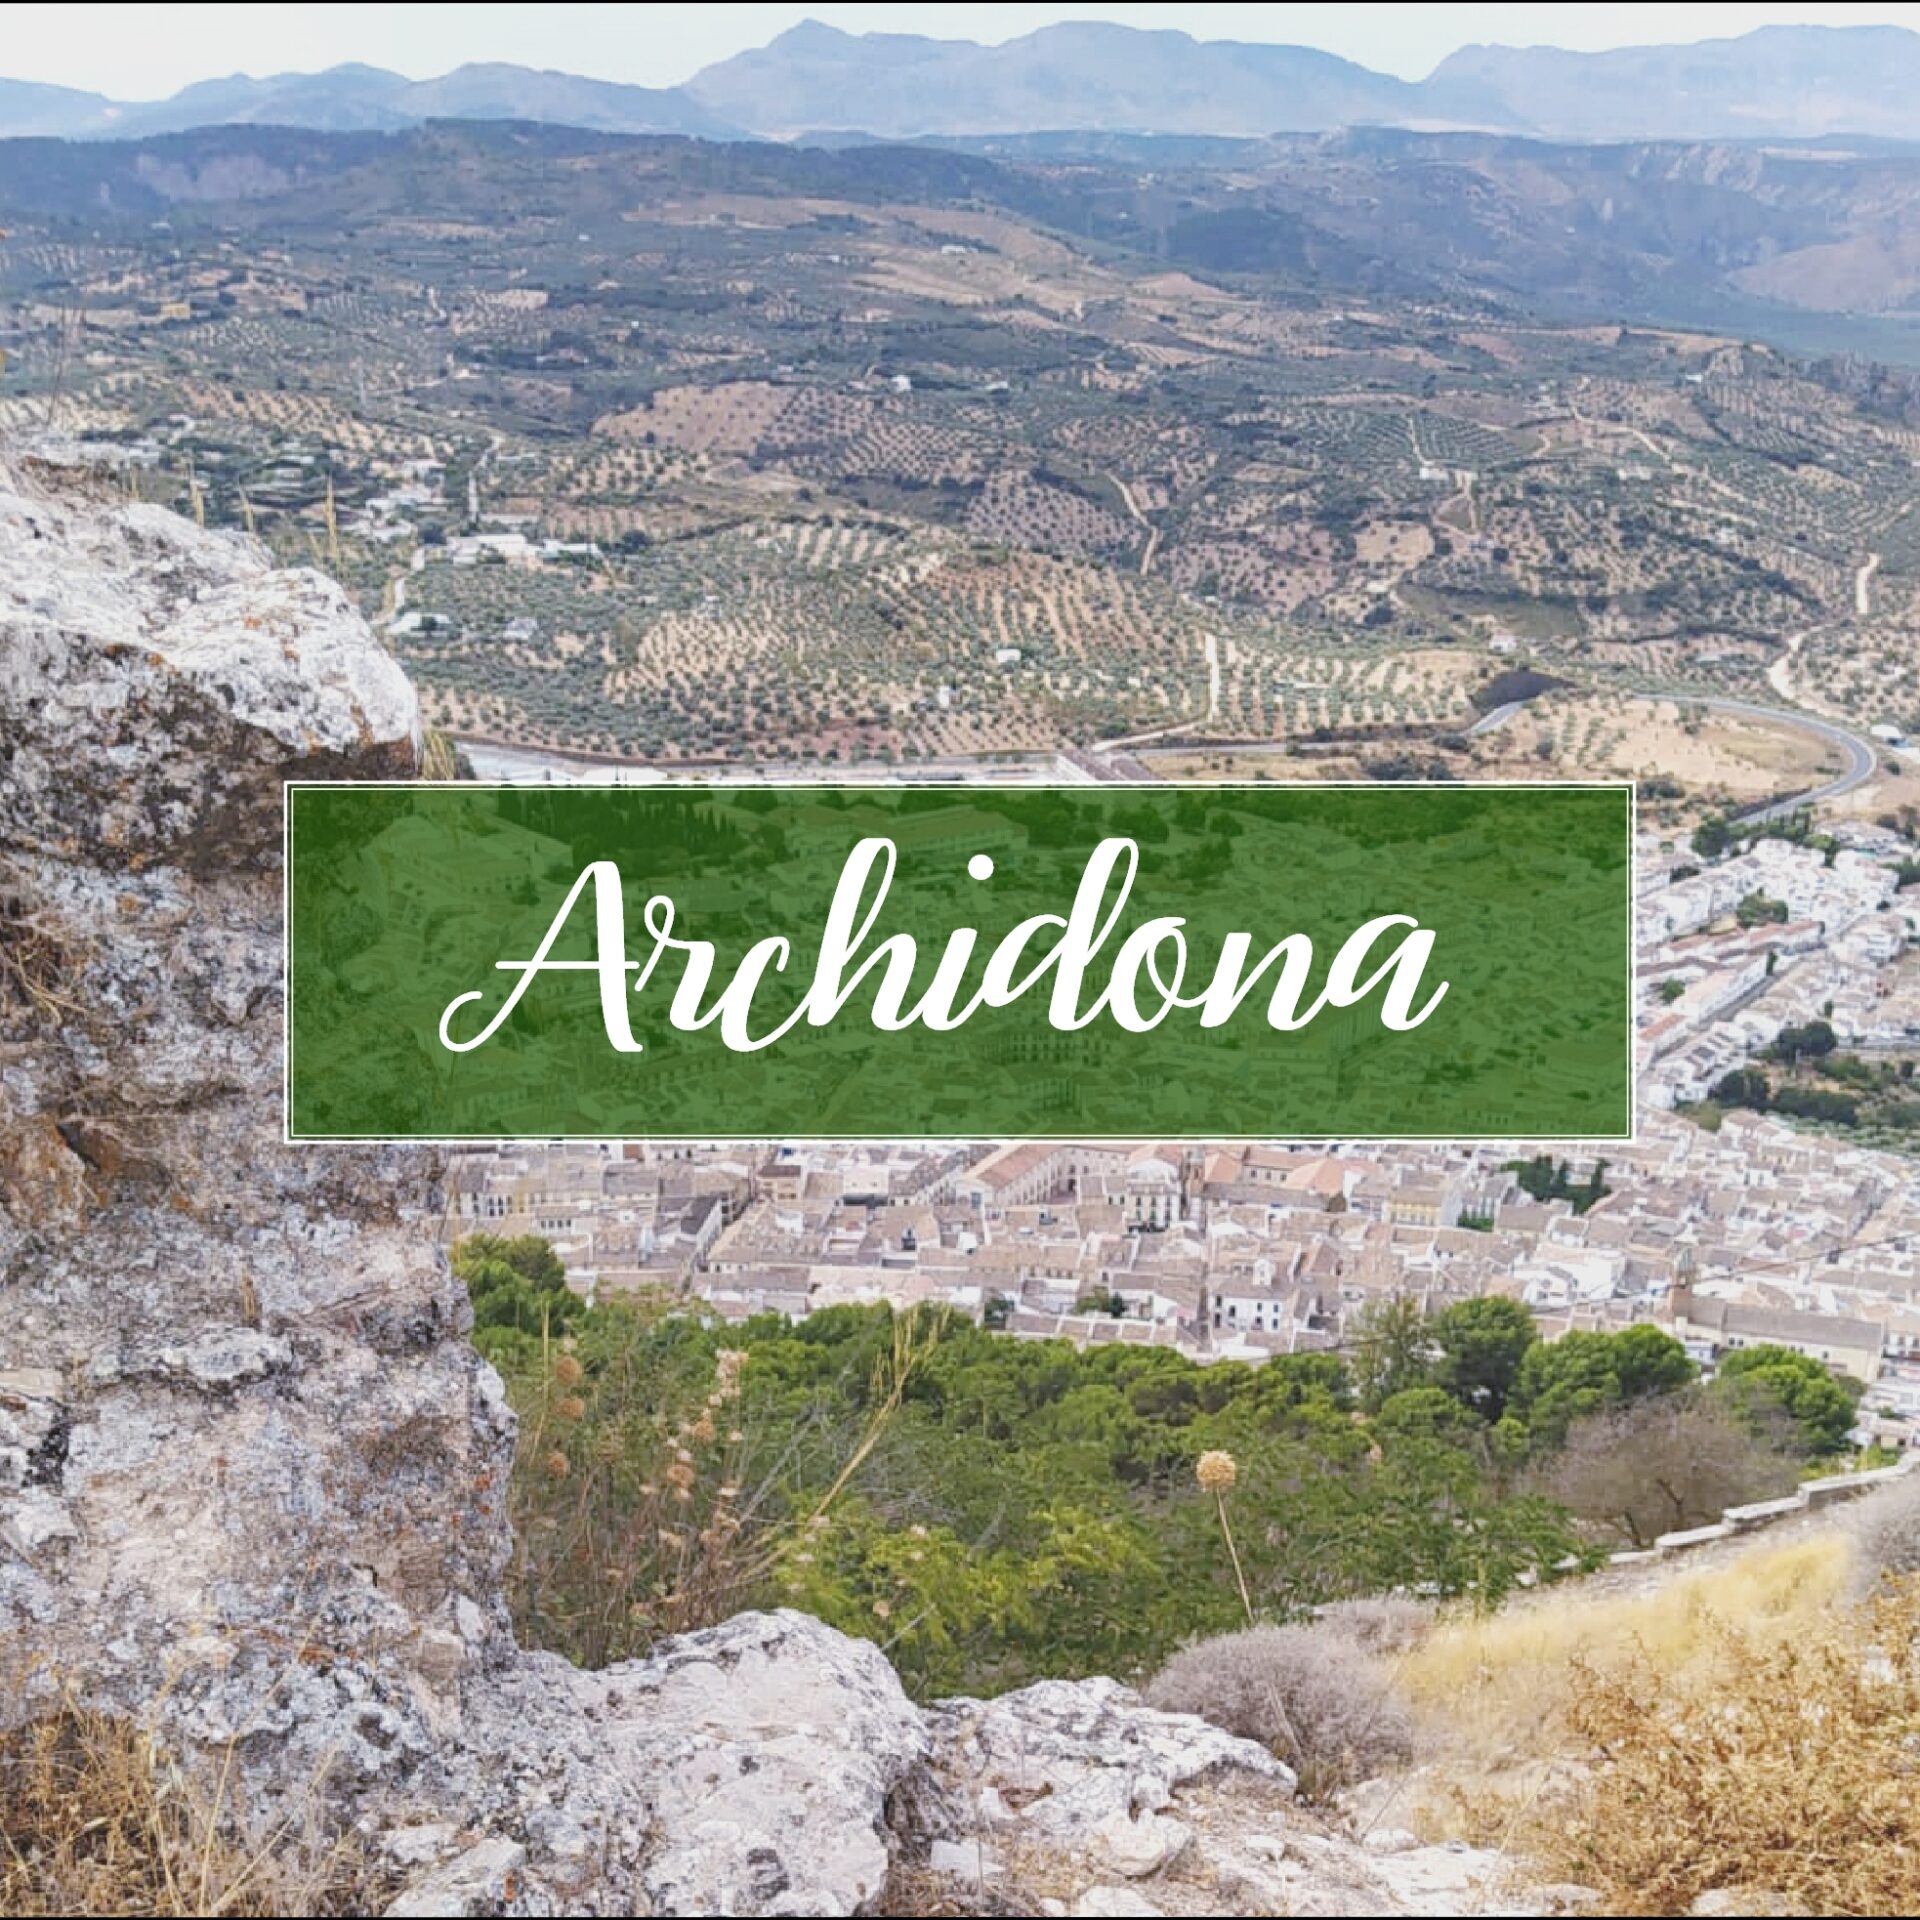 Archidona Pueblo Malaga